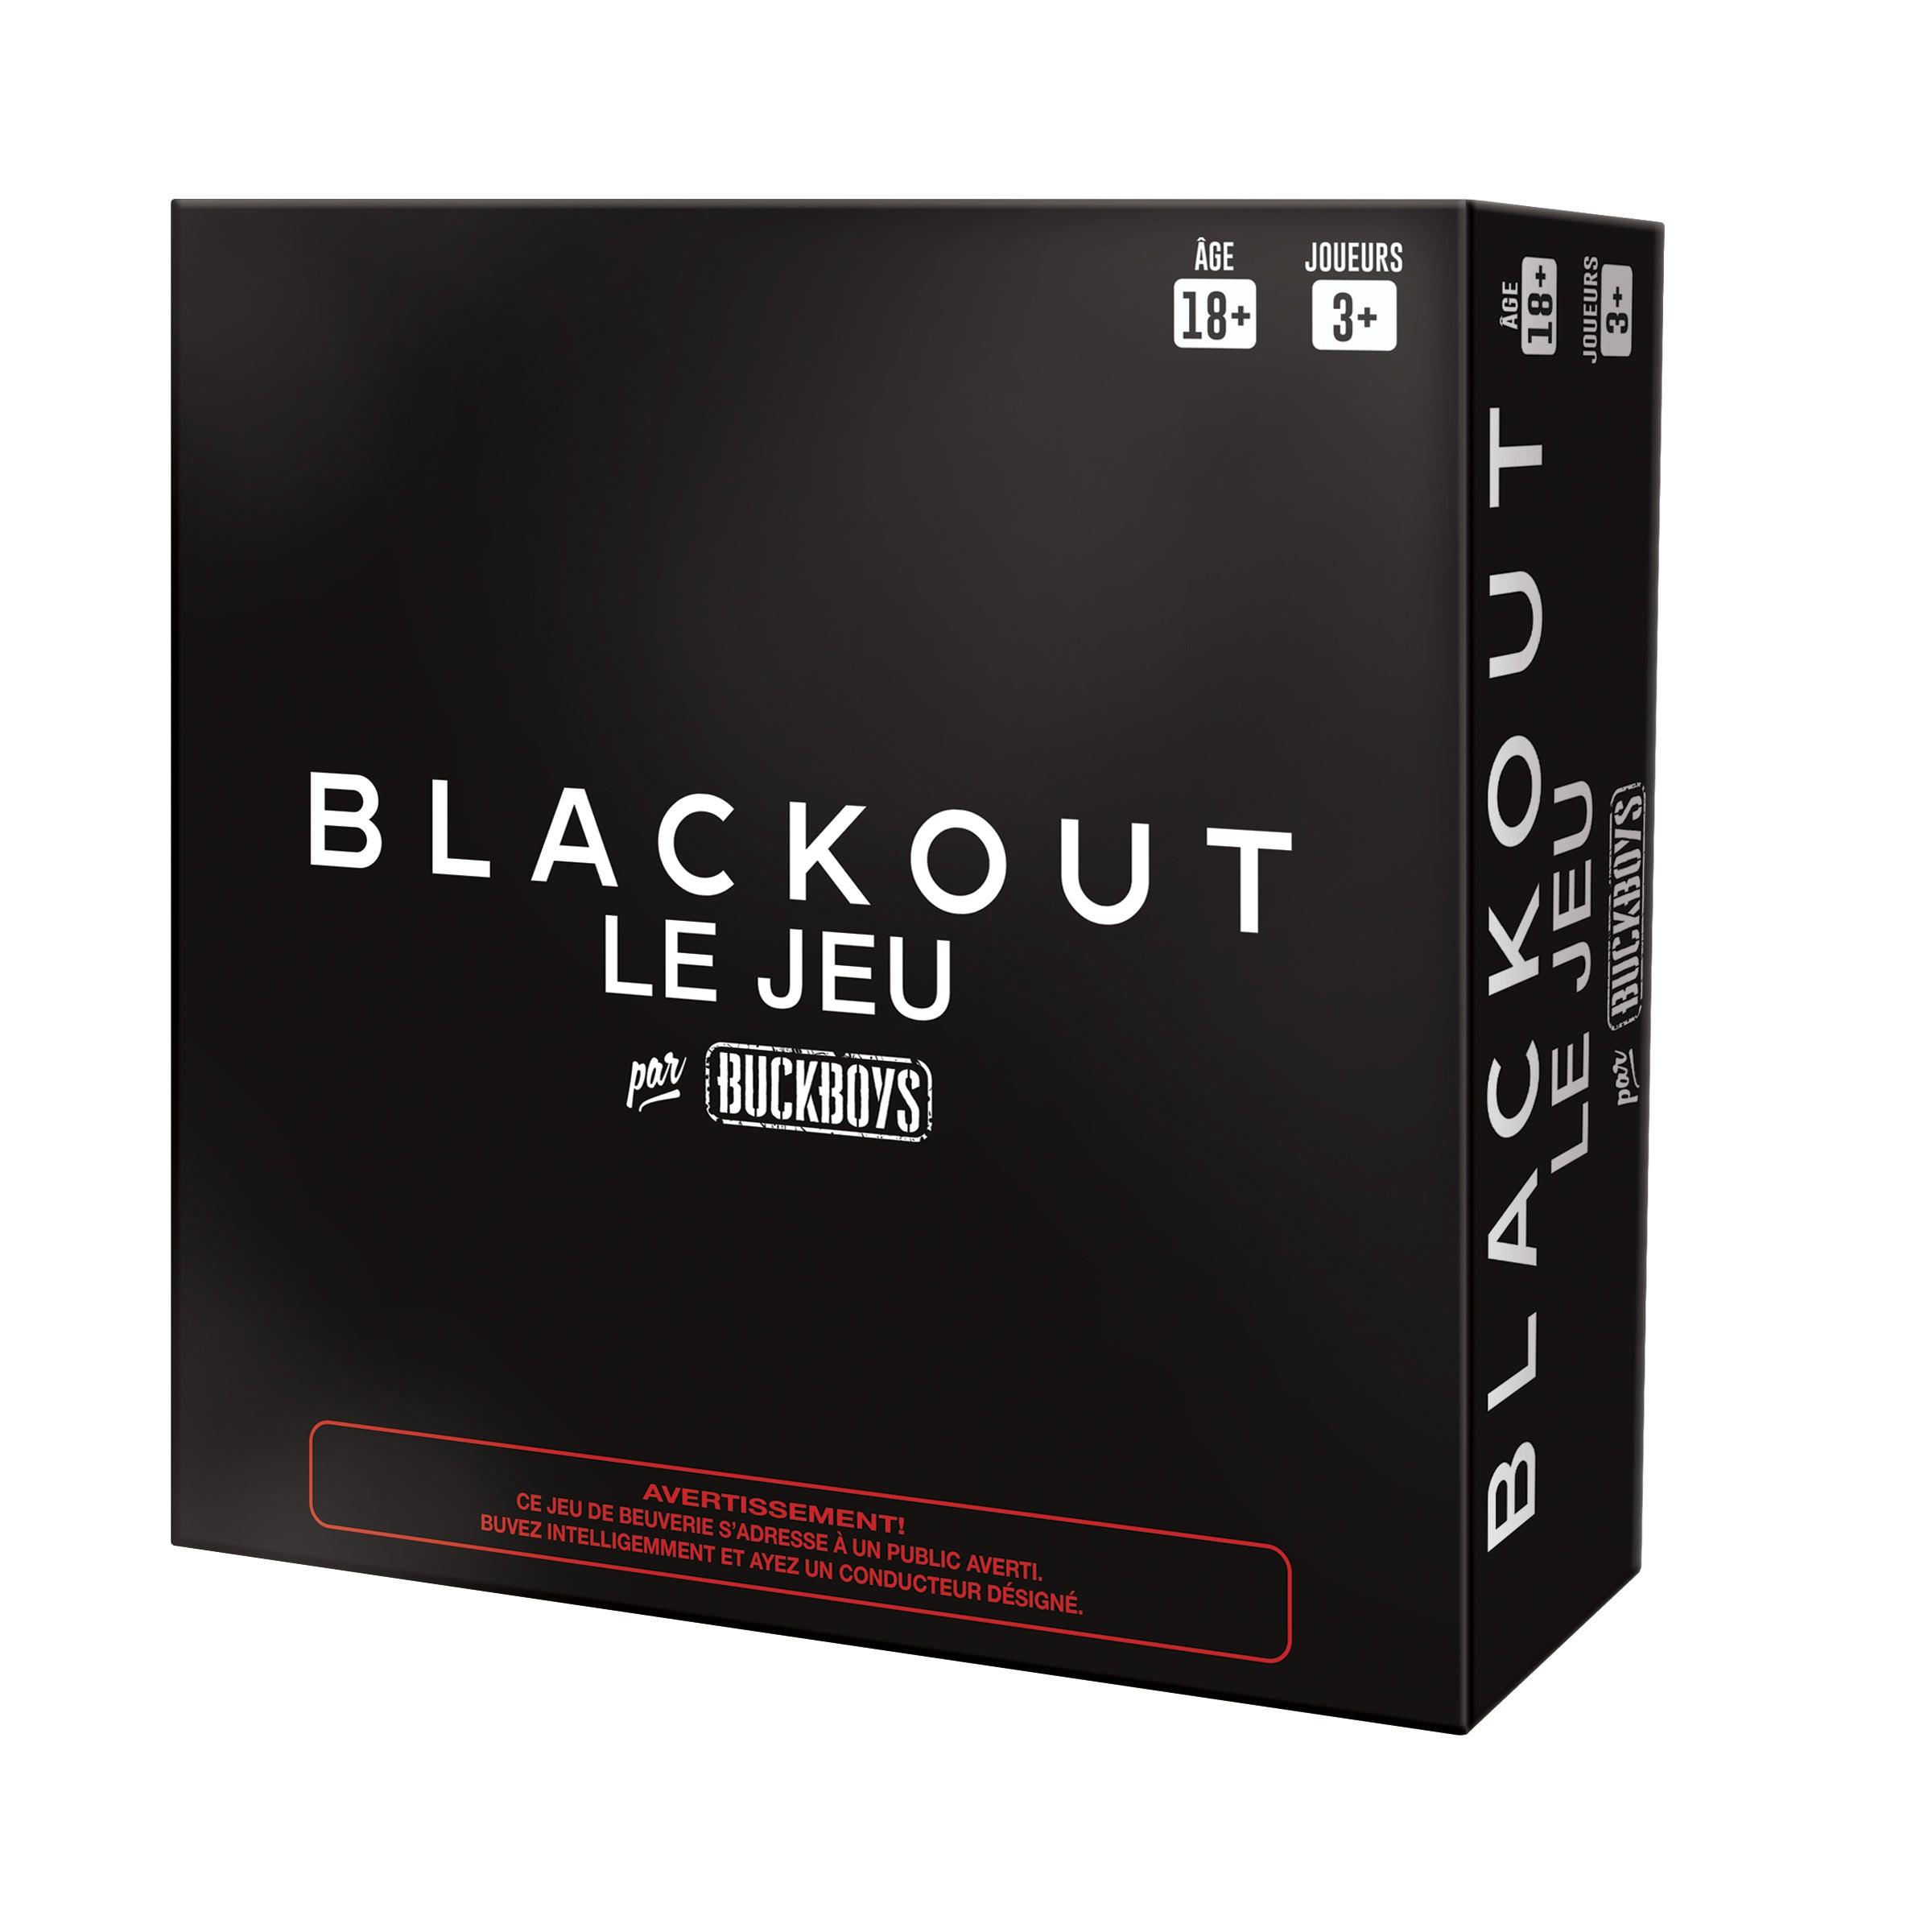 Blackout - Par Buckboys (Fr) - La Ribouldingue